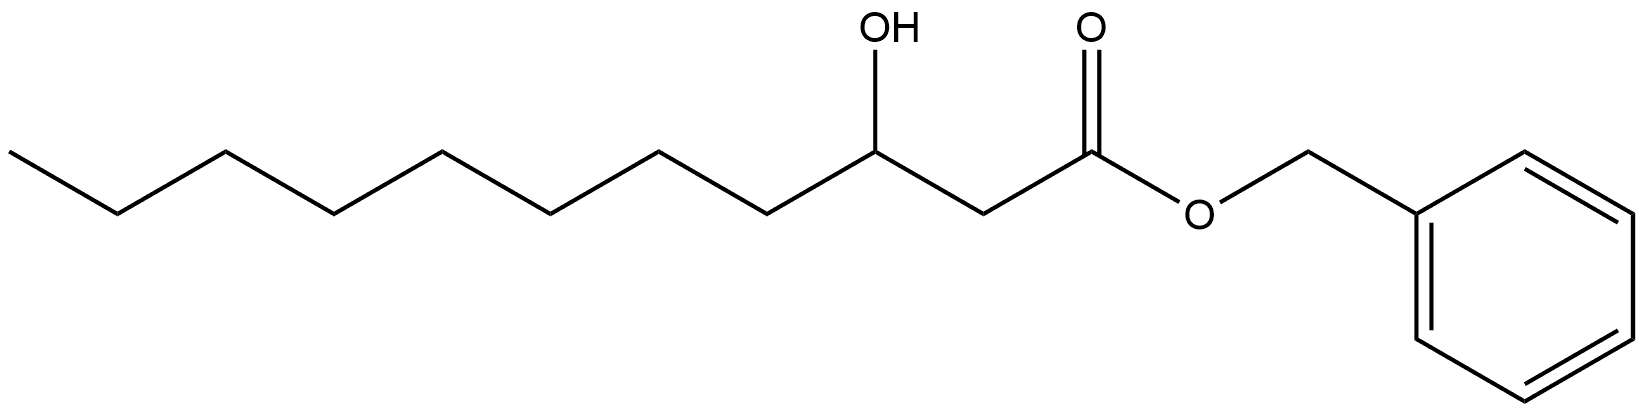 Phenylmethyl 3-hydroxyundecanoate Structure